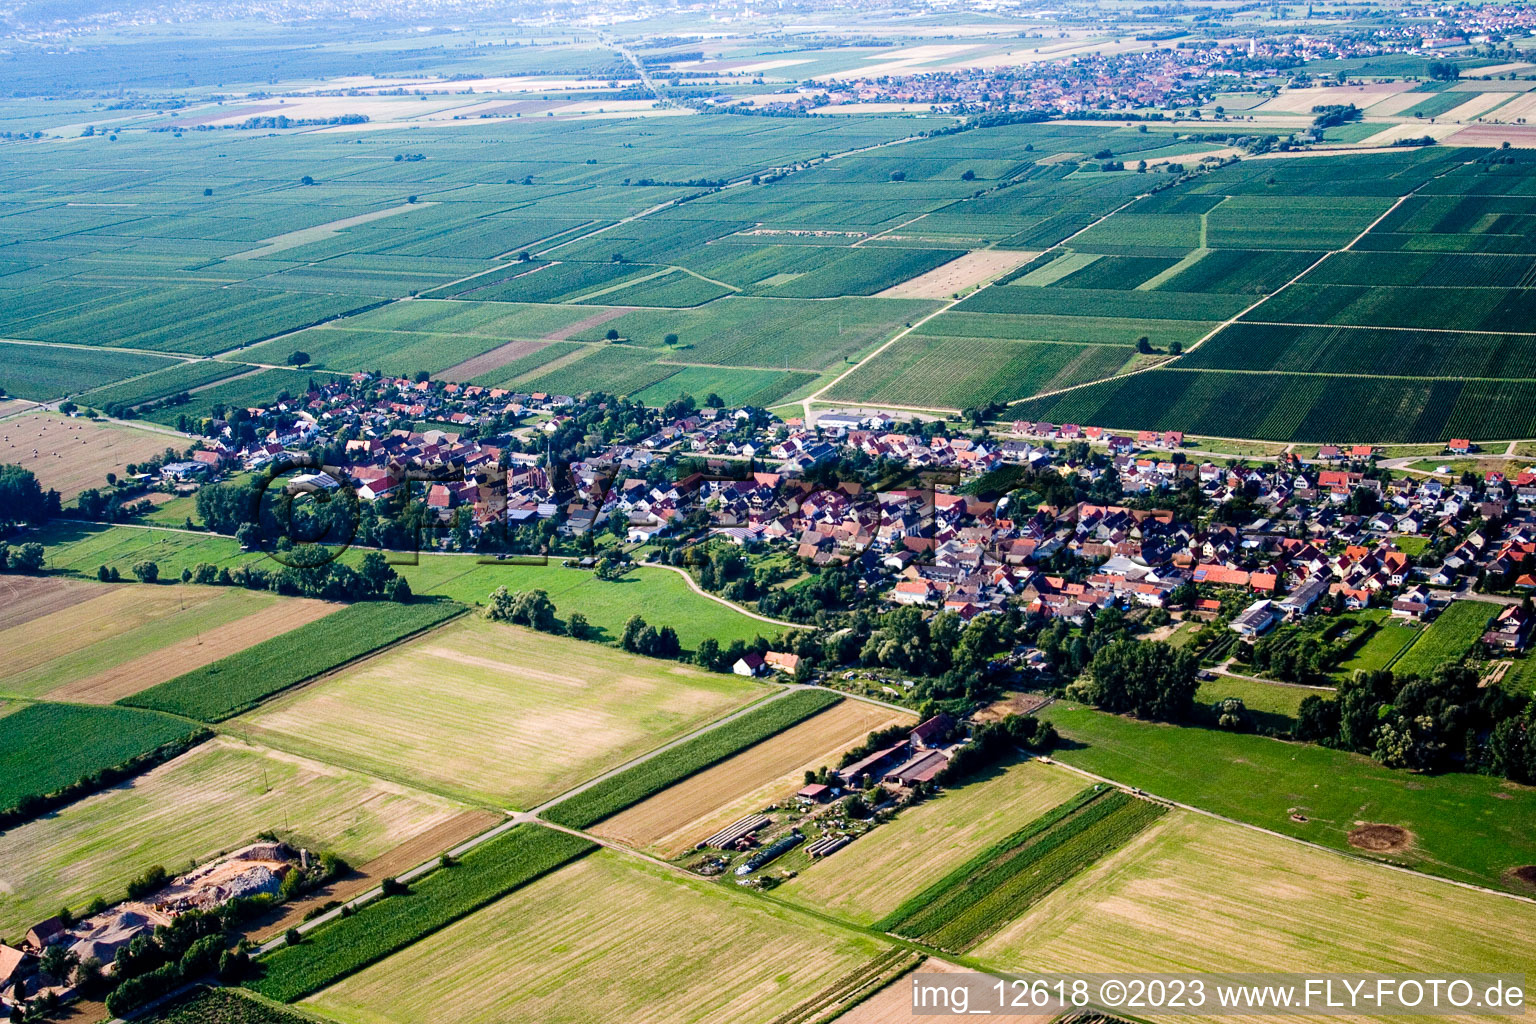 Altdorf im Bundesland Rheinland-Pfalz, Deutschland aus der Luft betrachtet